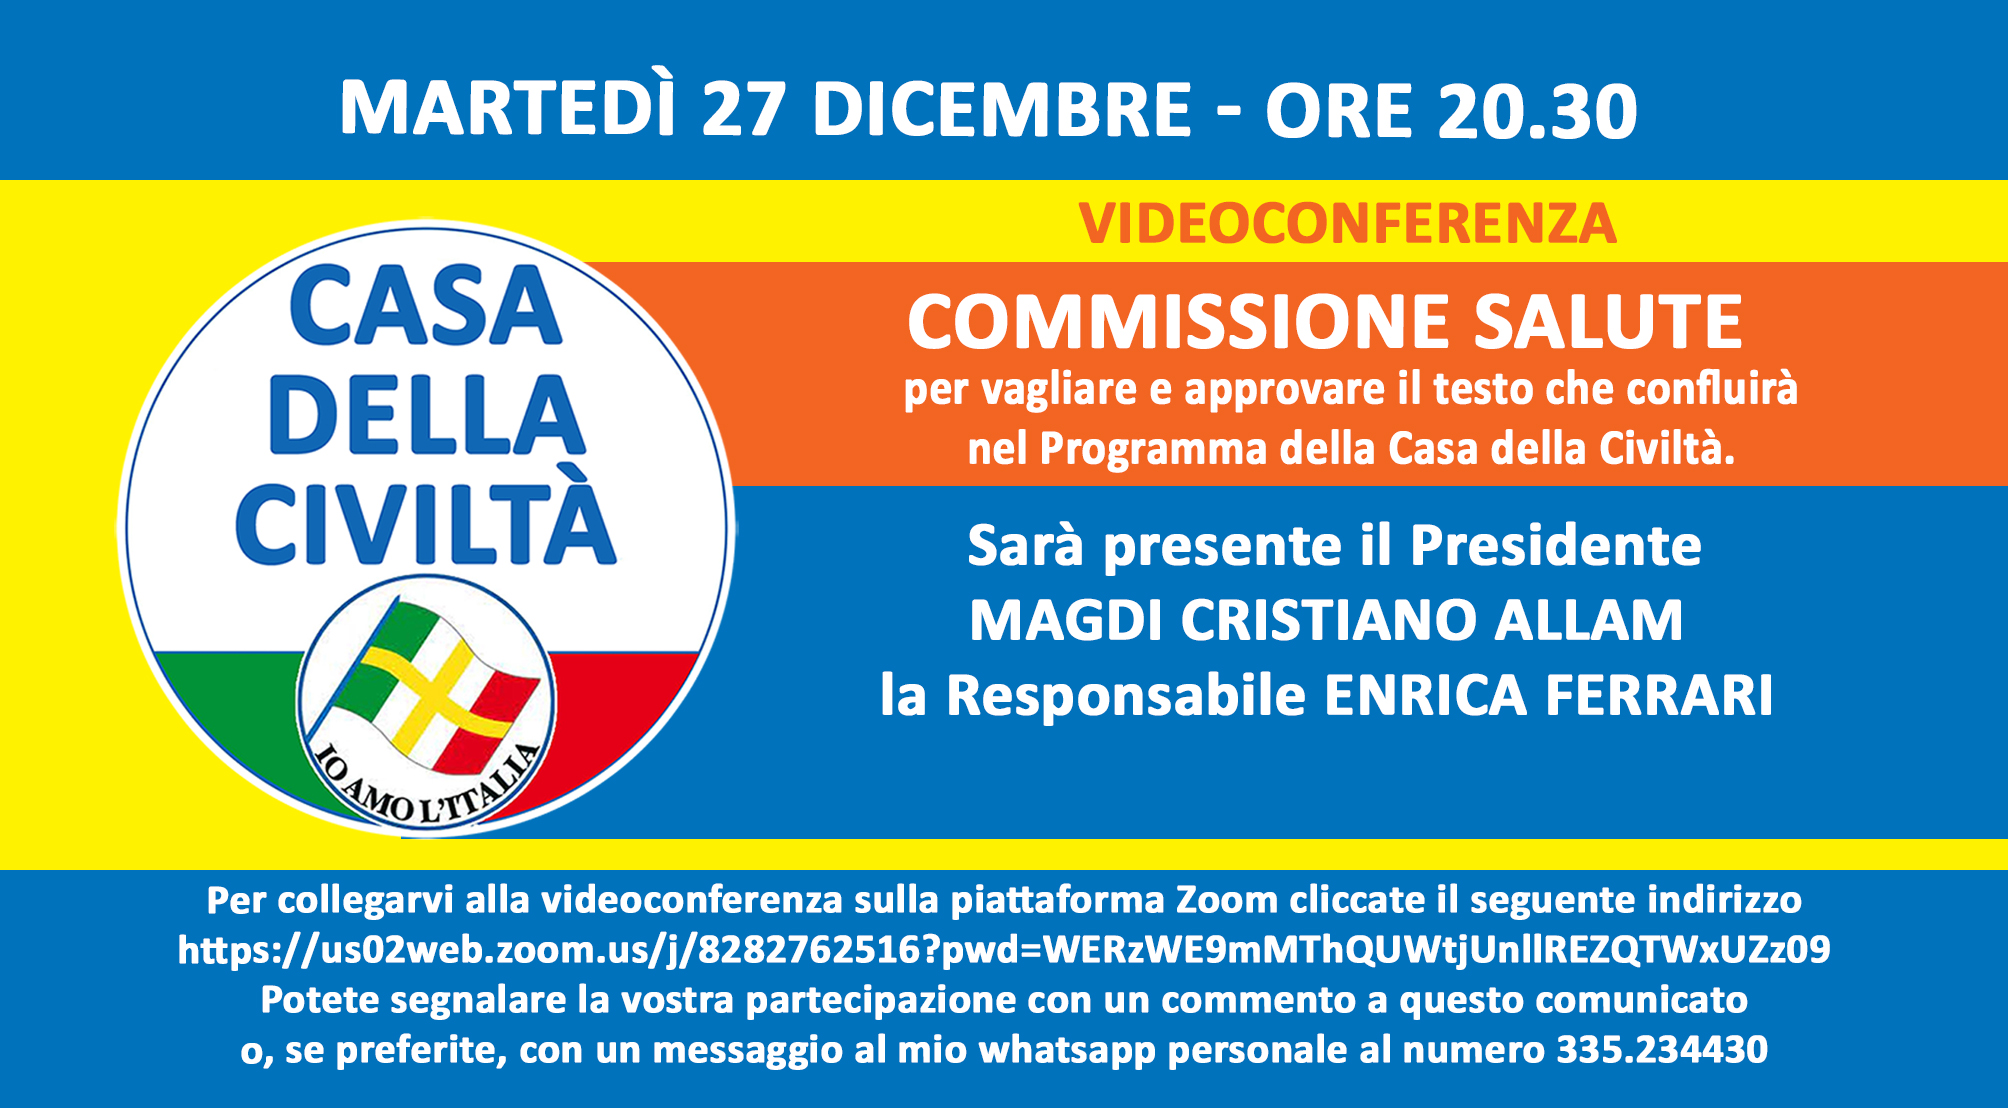 Martedì 27 dicembre, alle ore 20.30, videoconferenza della Commissione Salute. Gli iscritti alla Casa della Civiltà possono partecipare